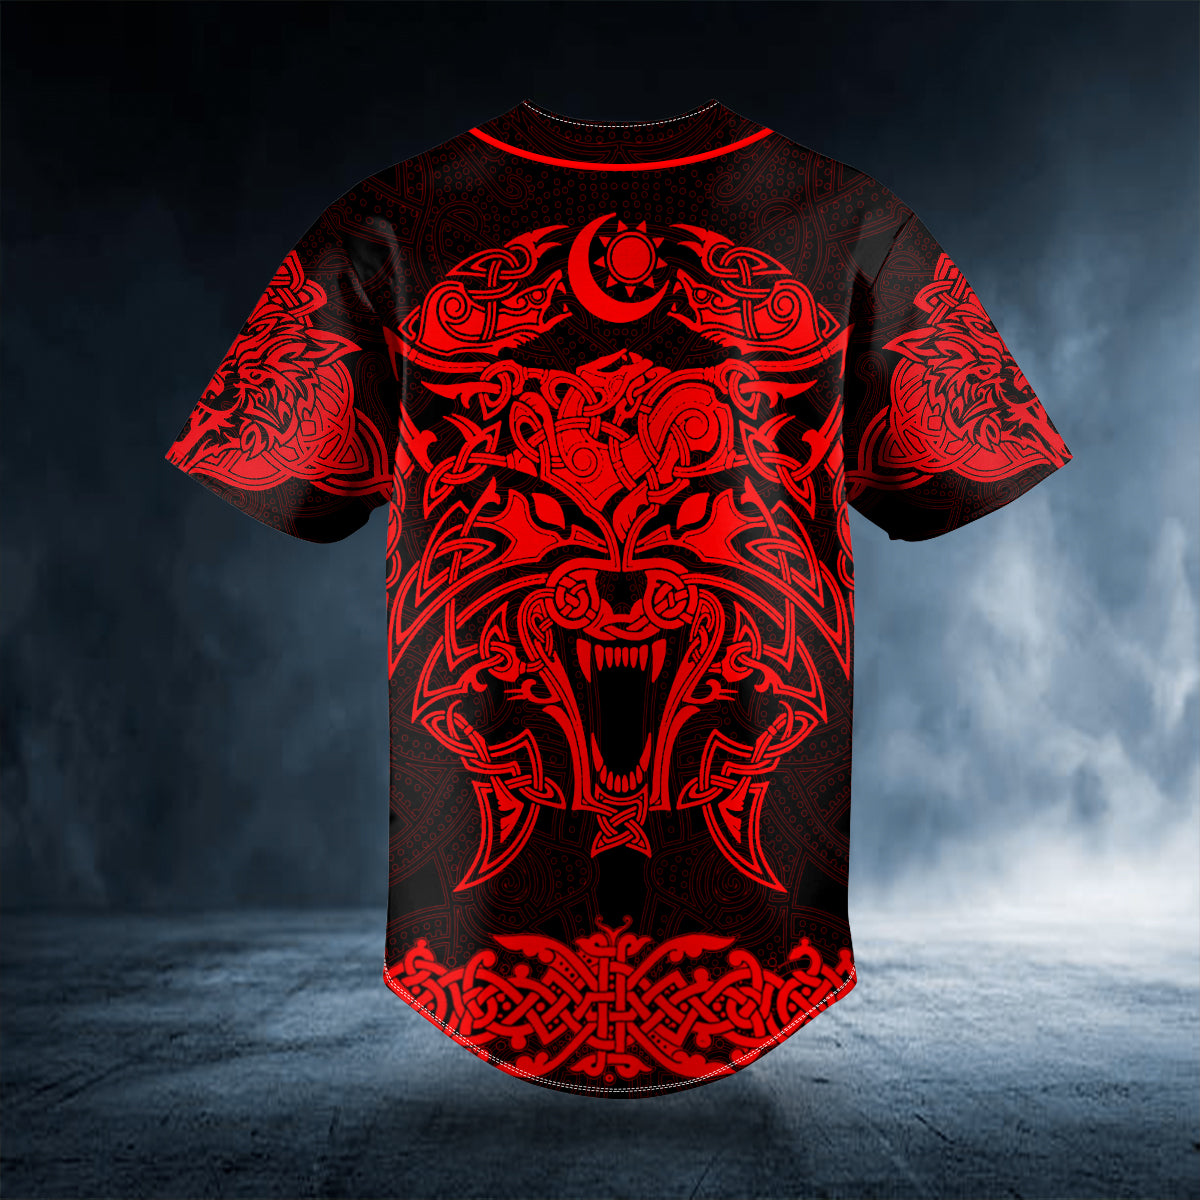 red wolf power viking tattoo custom baseball jersey bsj 1076 t63yd